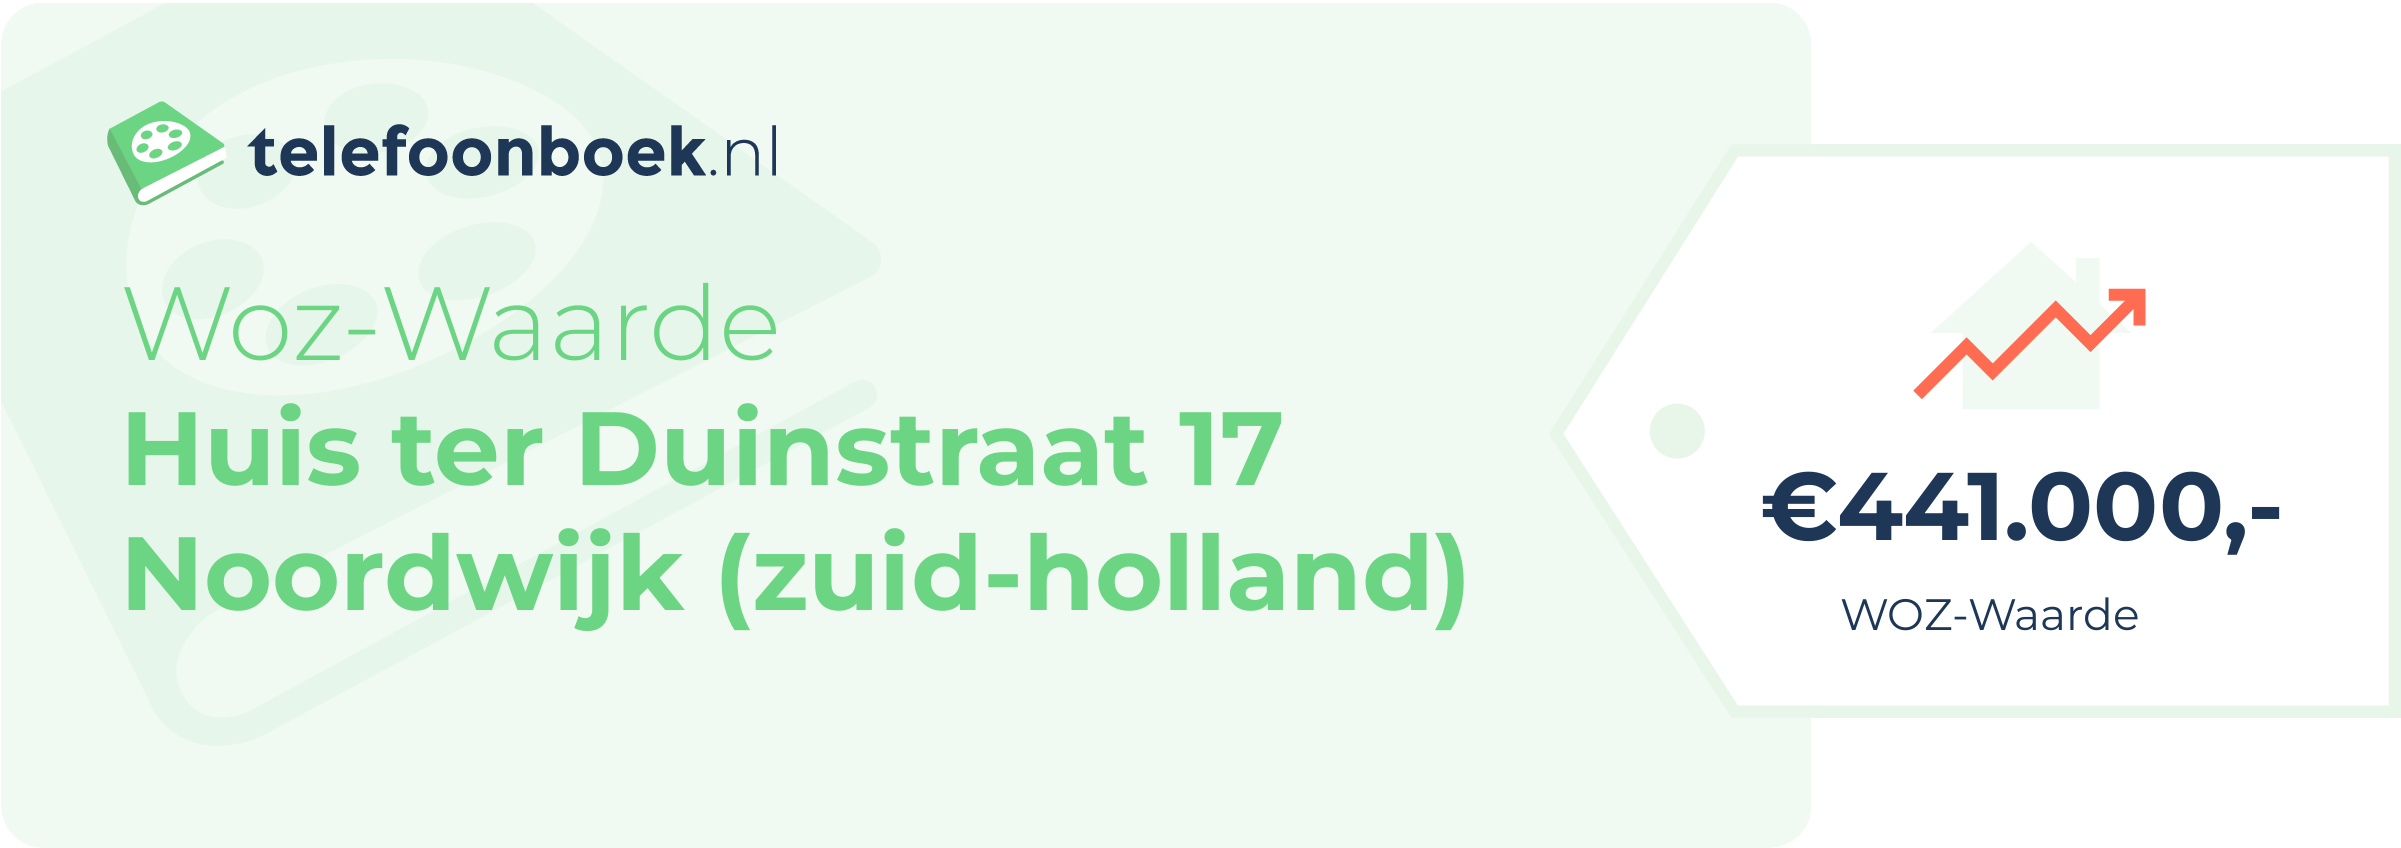 WOZ-waarde Huis Ter Duinstraat 17 Noordwijk (Zuid-Holland)